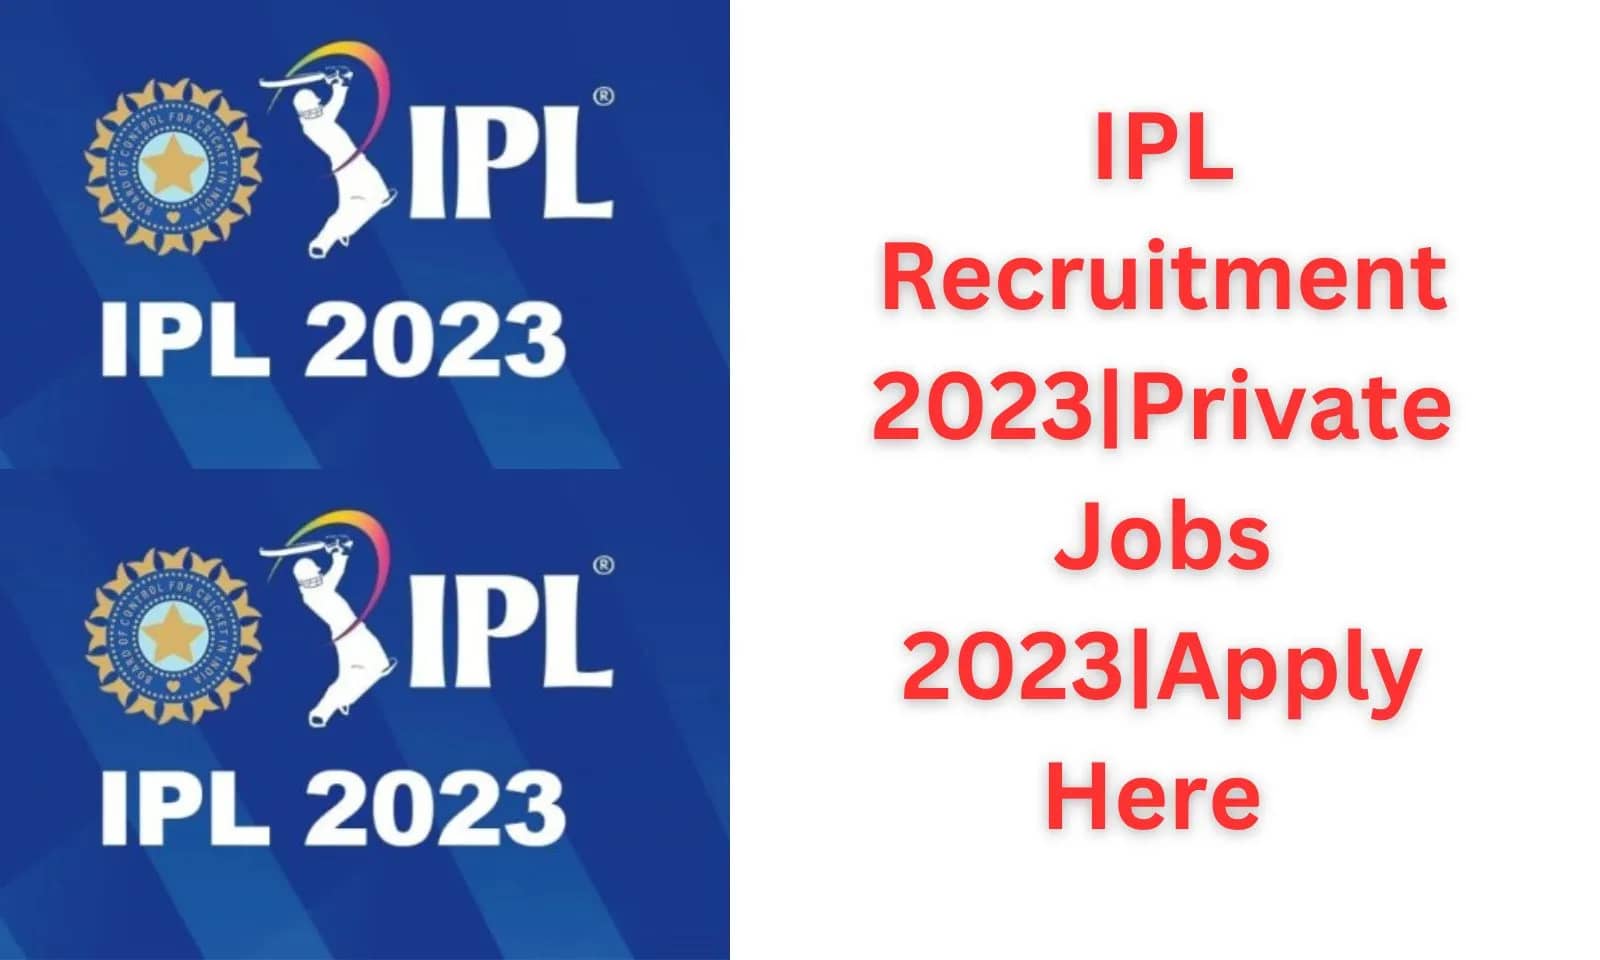 IPL Recruitment 2023